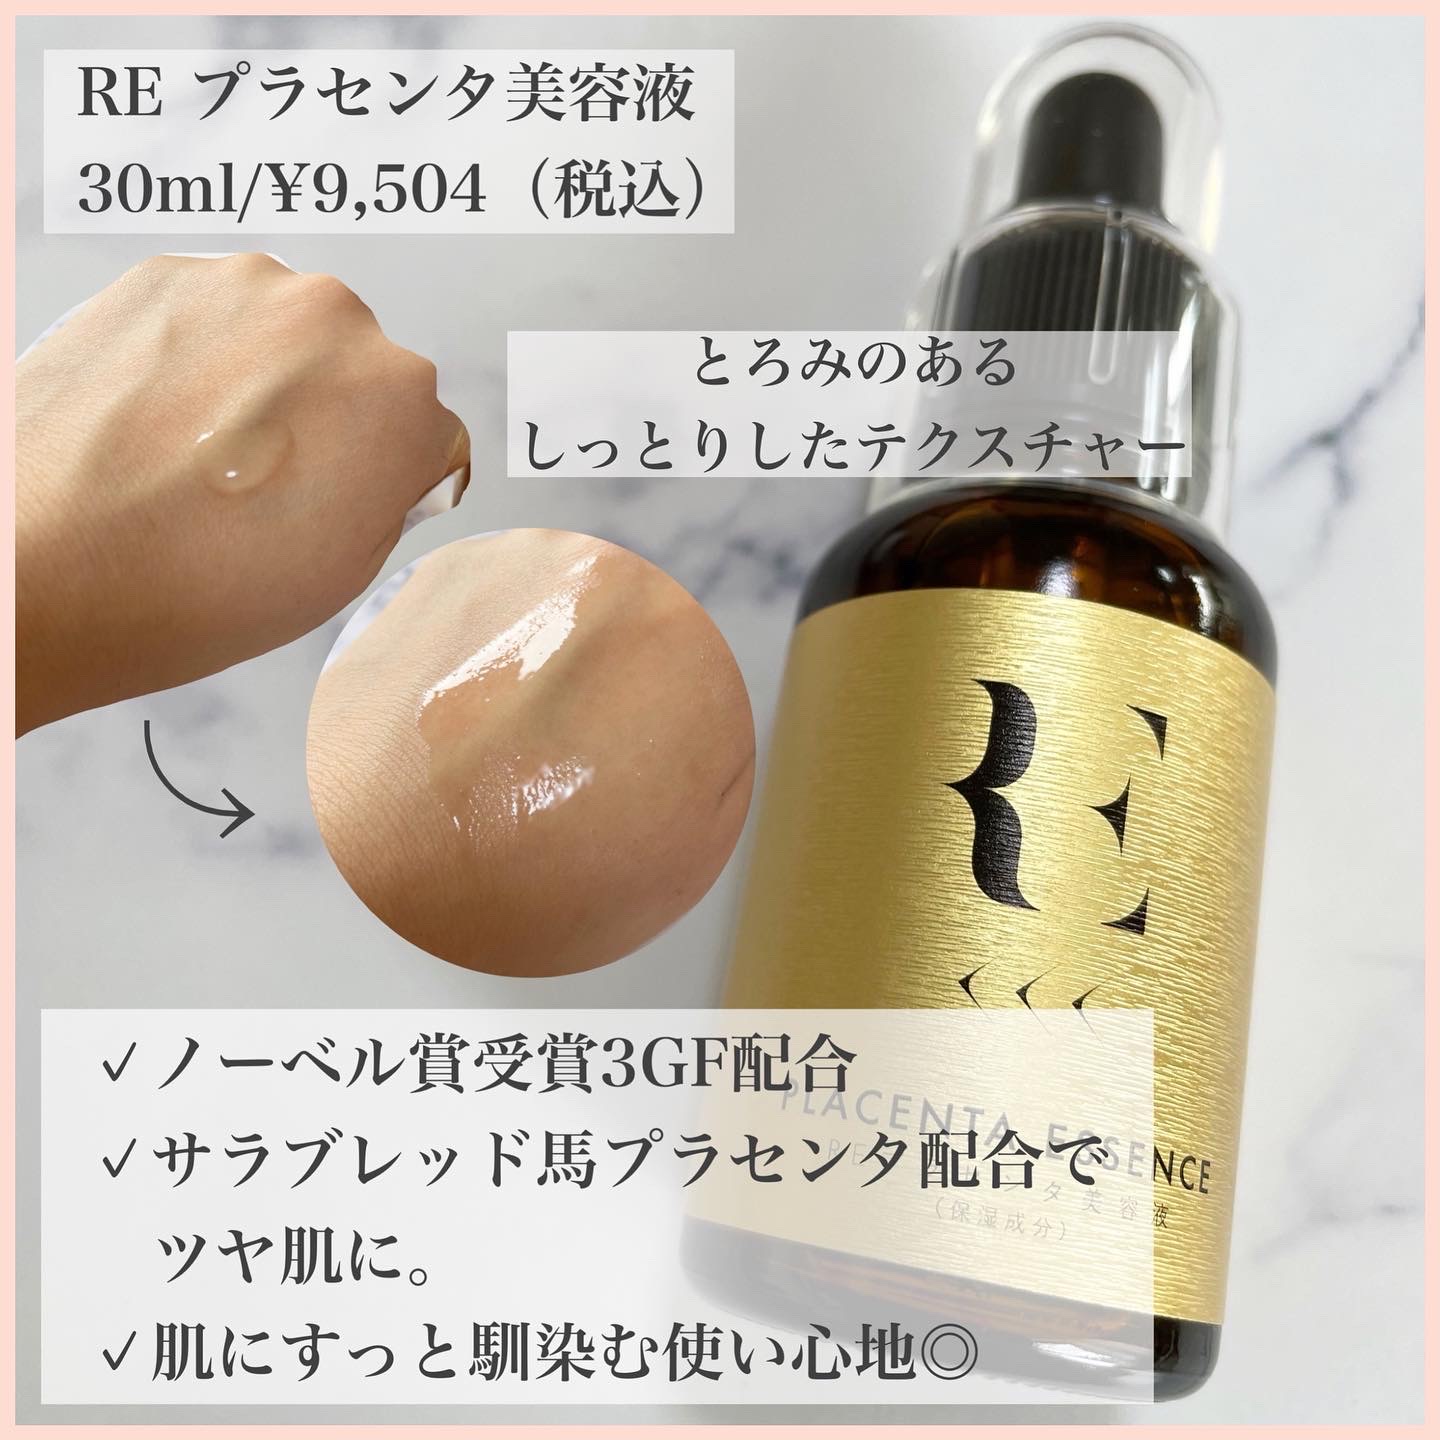 【新品未開封】RE プラセンタ美容液　30ml 2本セットスキンケア/基礎化粧品